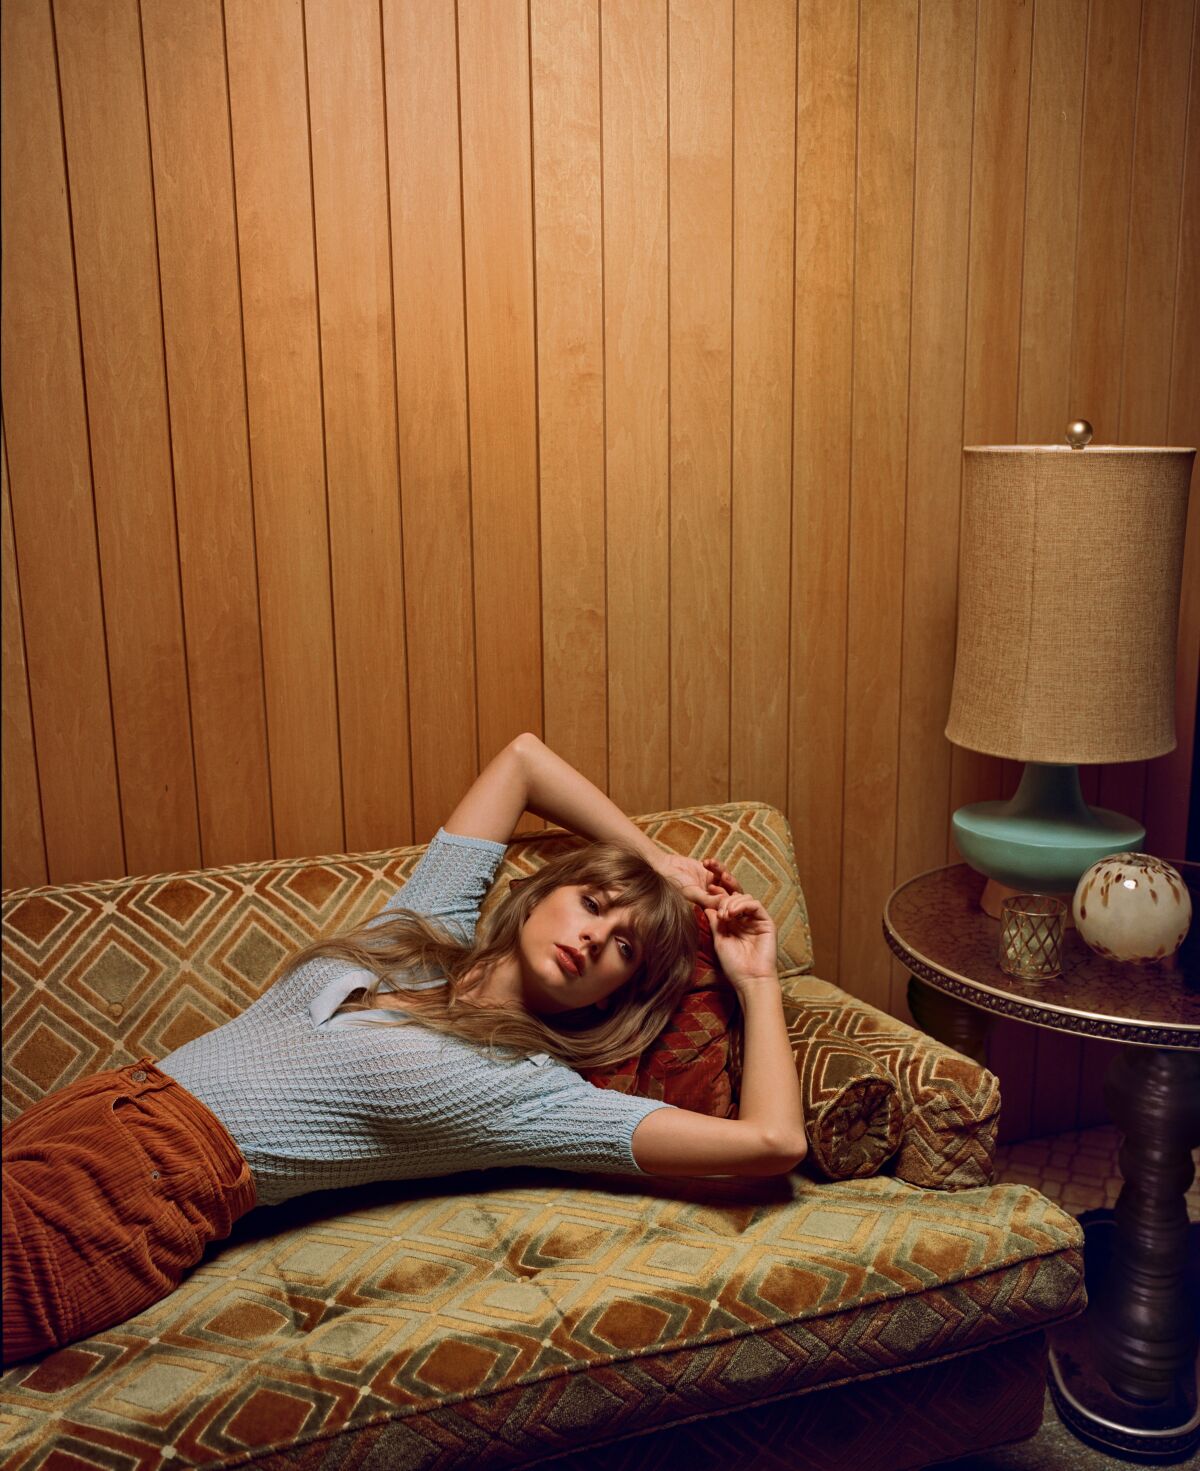 나무 패널로 마감된 방의 소파에 기대어 앉아 있는 여성